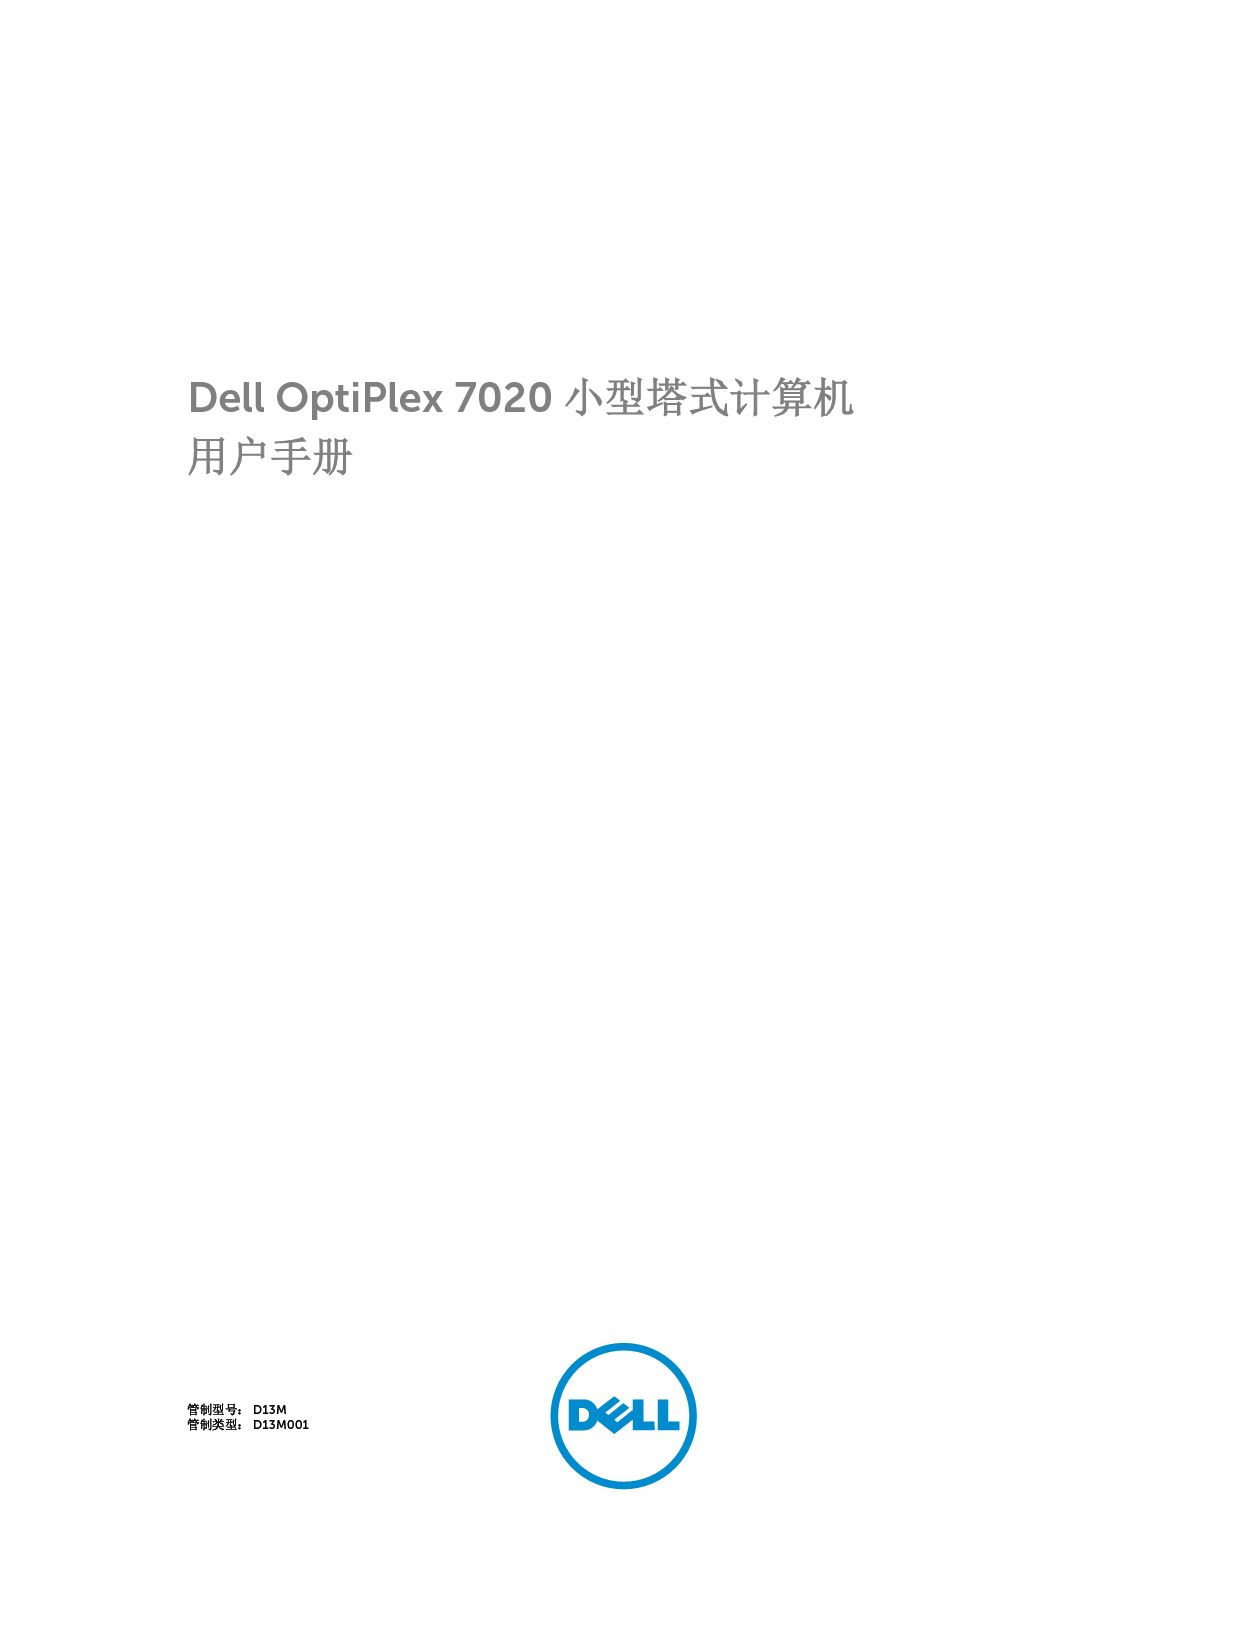 戴尔 Dell Optiplex 7020 小型塔式 用户手册 封面